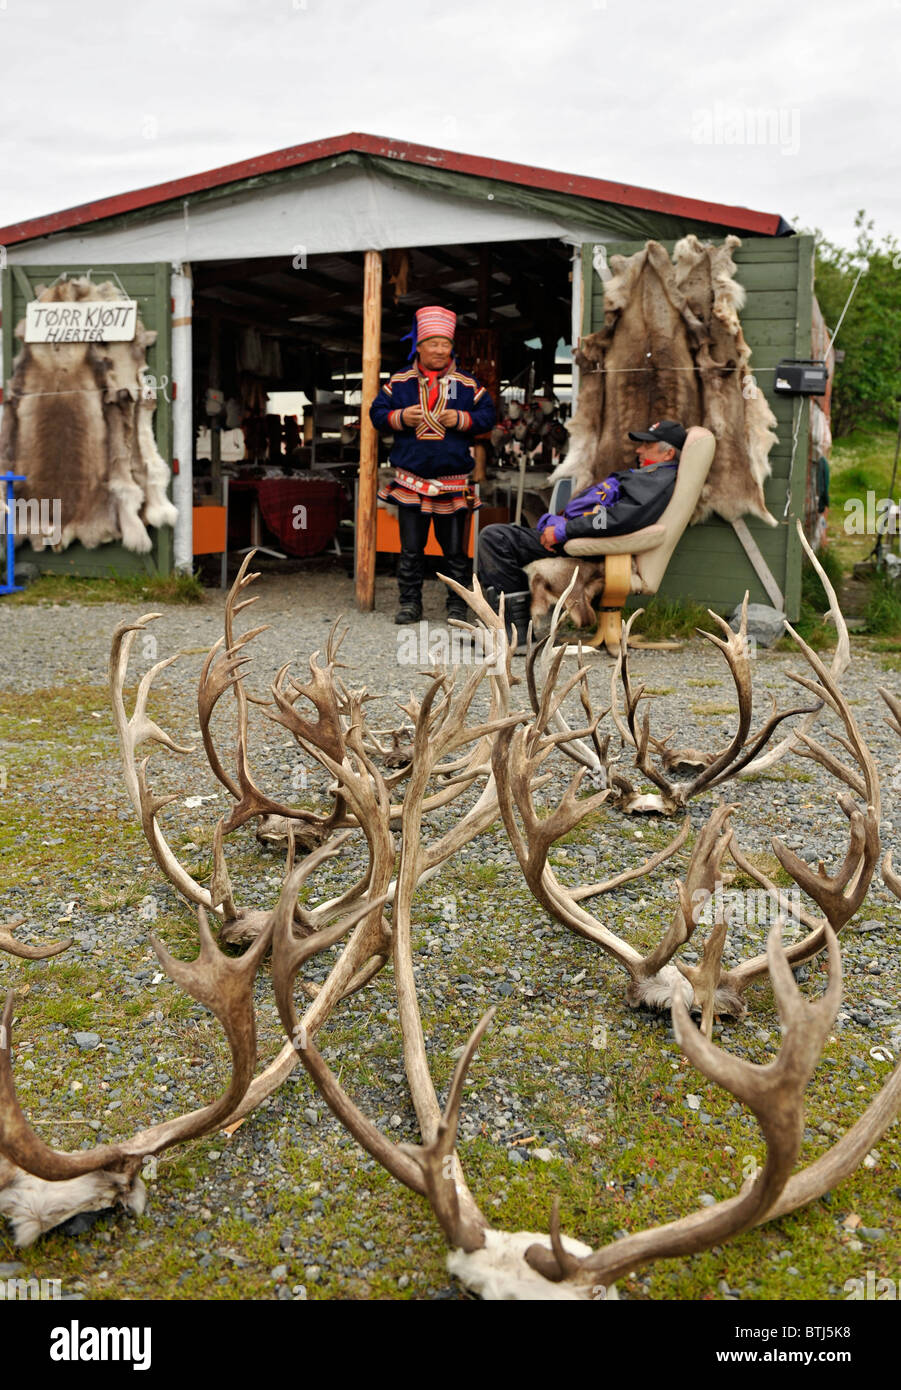 Les personnes vendant de l'artisanat et de Sami souvenirs comme cacher des rennes et des bois. Isnestoften près d'Alta, Finnmark, Norvège du Nord. Banque D'Images